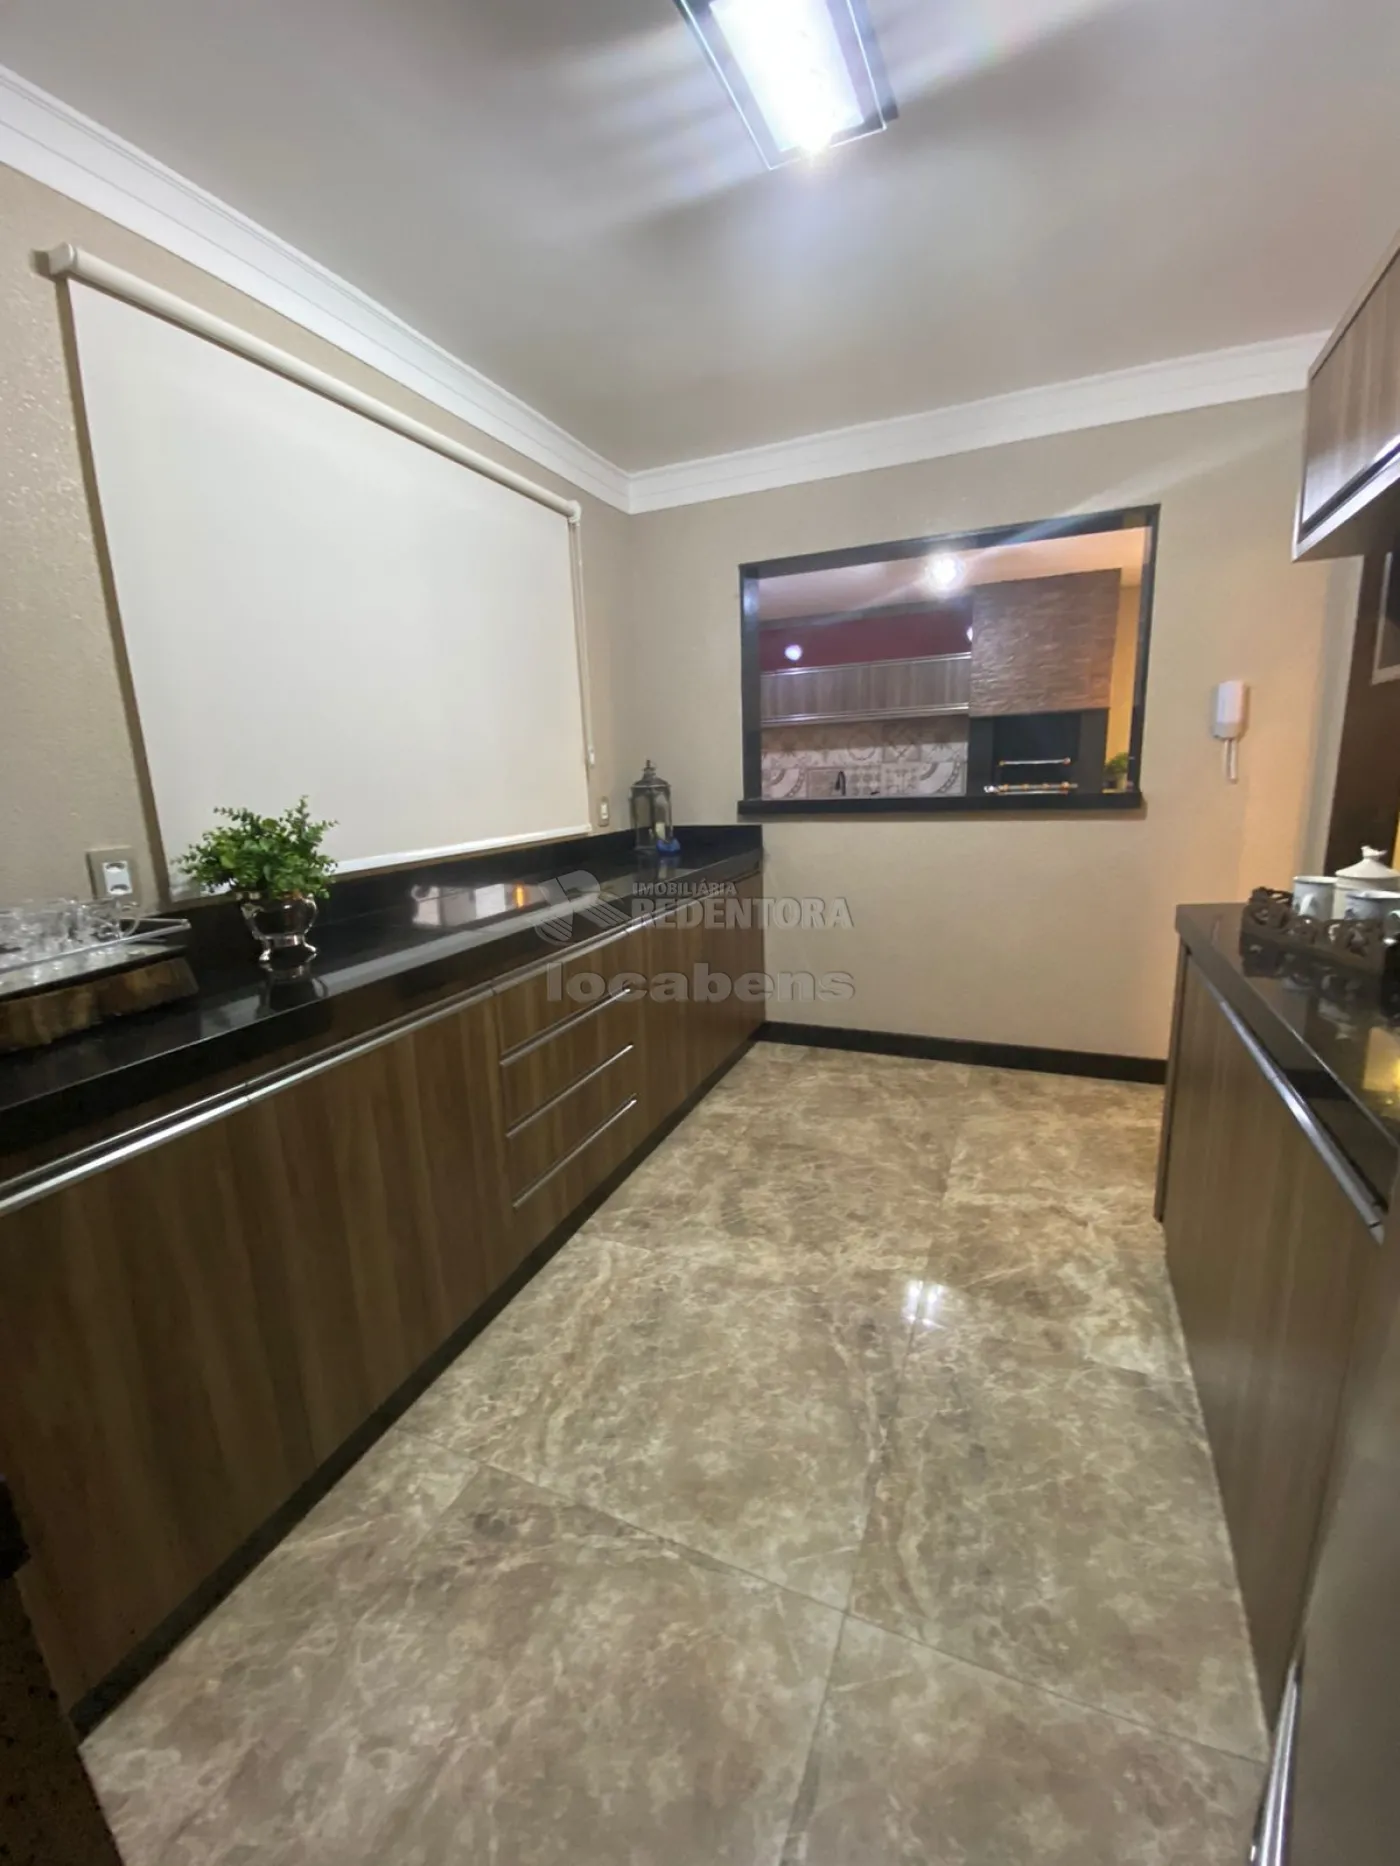 Comprar Casa / Condomínio em São José do Rio Preto apenas R$ 530.000,00 - Foto 8